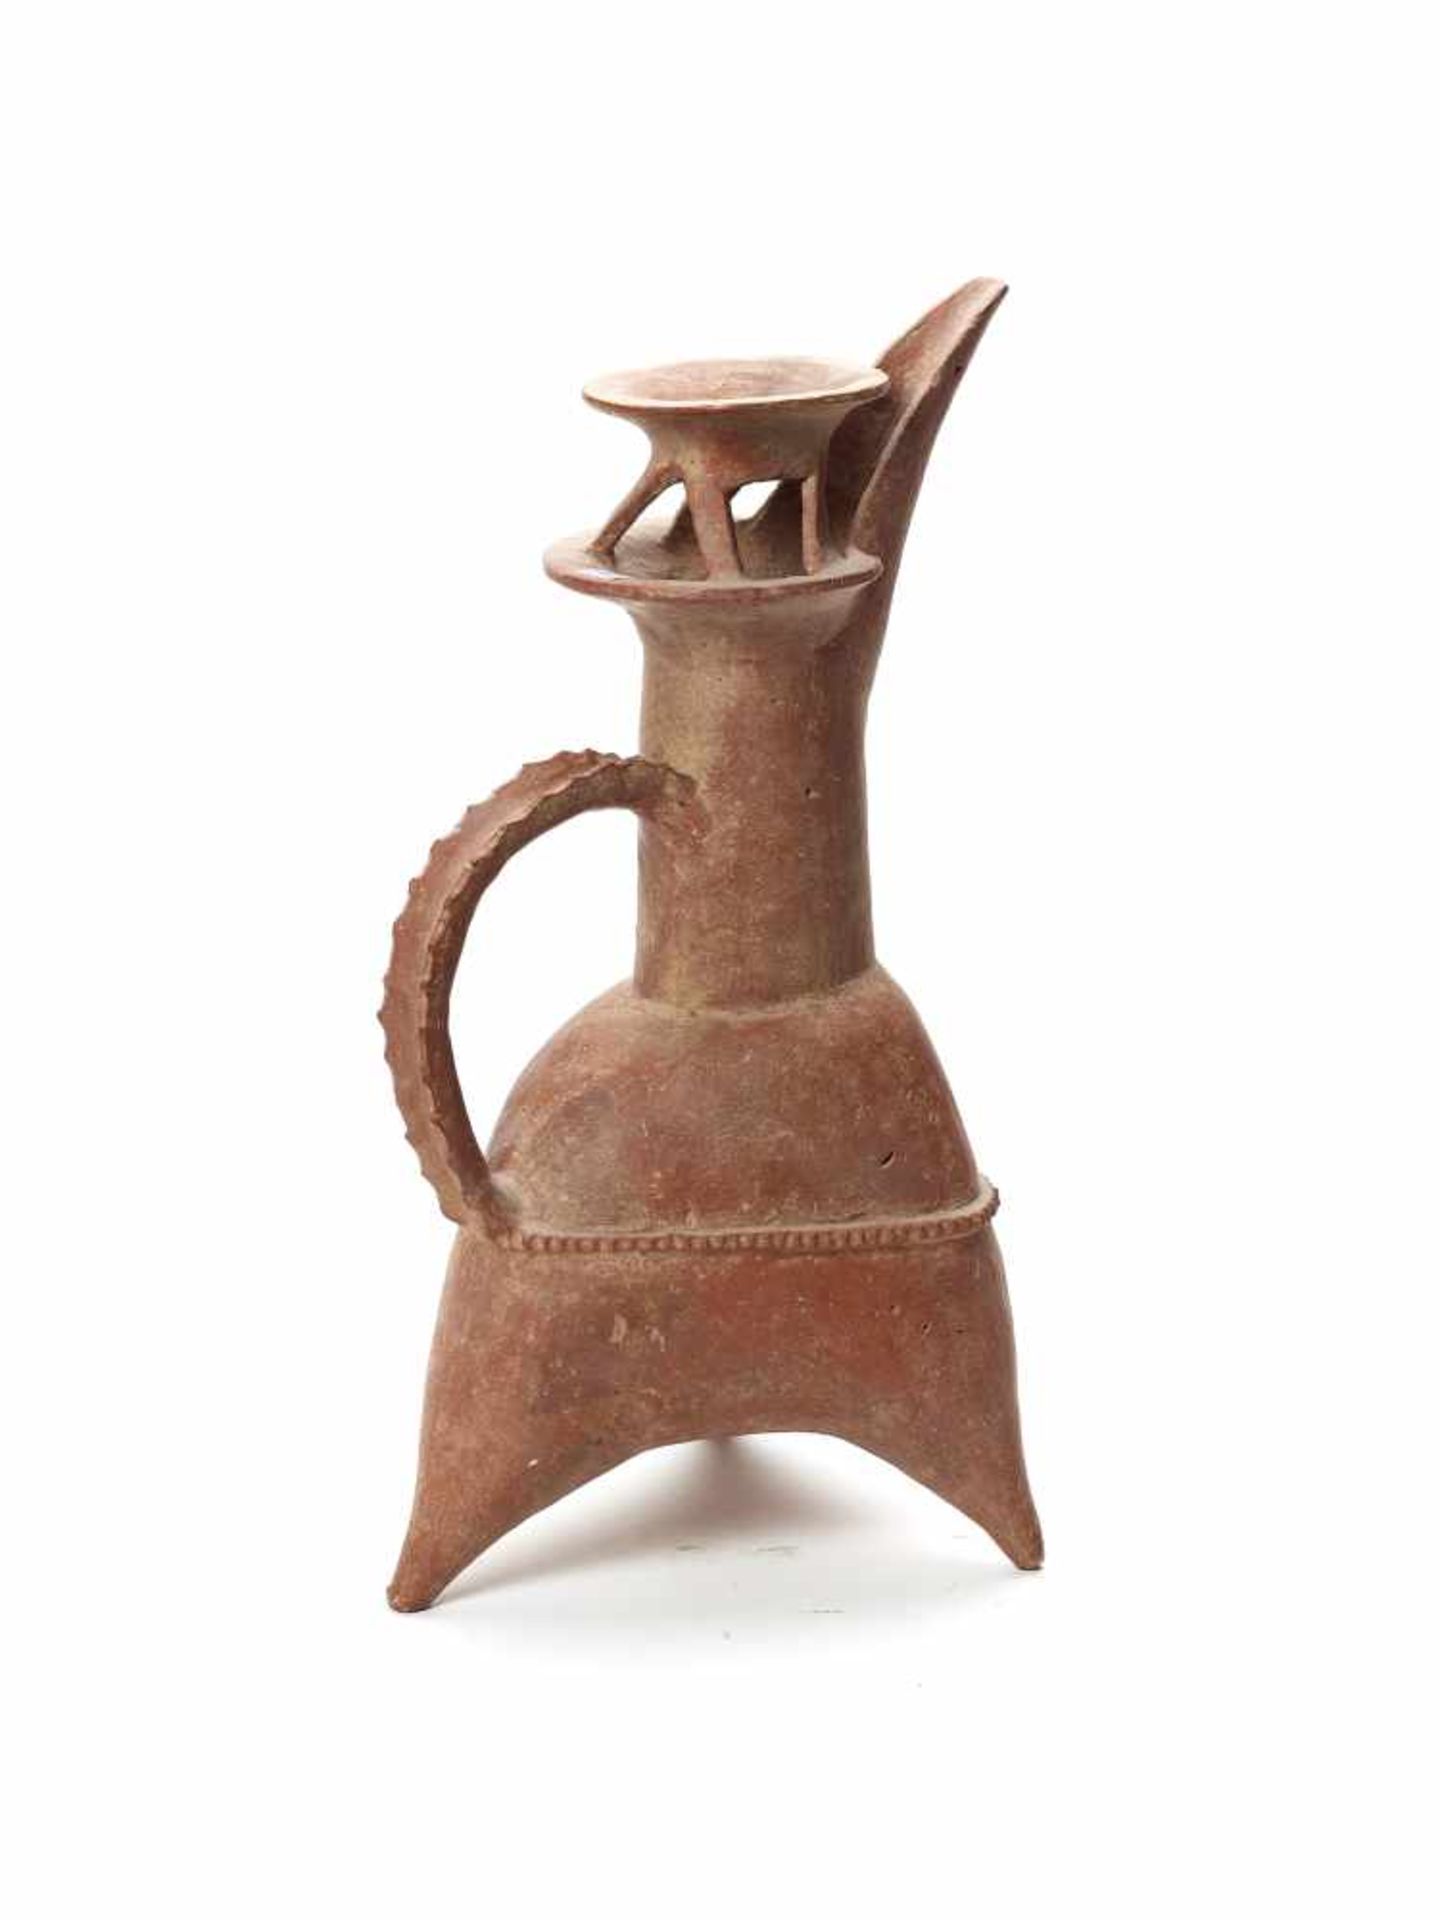 A CHINESE GUI TRIPOD VESSEL – C. 2800-2400 BC.CeramicChina, Dawenkou Culture, Neolithic period, c. - Image 2 of 4